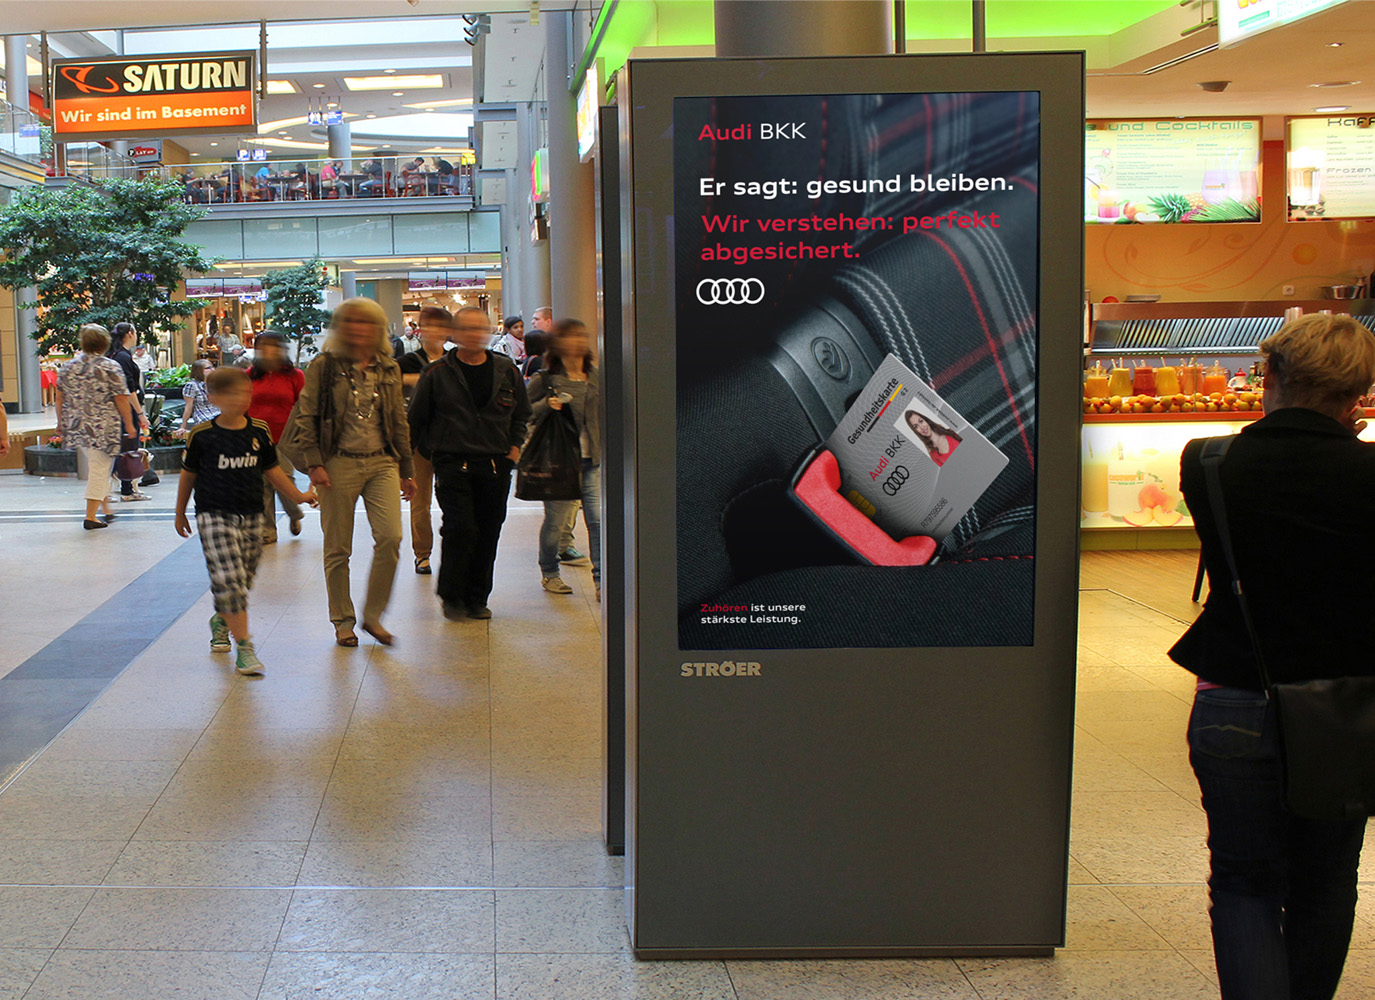 Audi BKK Markenpositionierung - Plakatwerbung